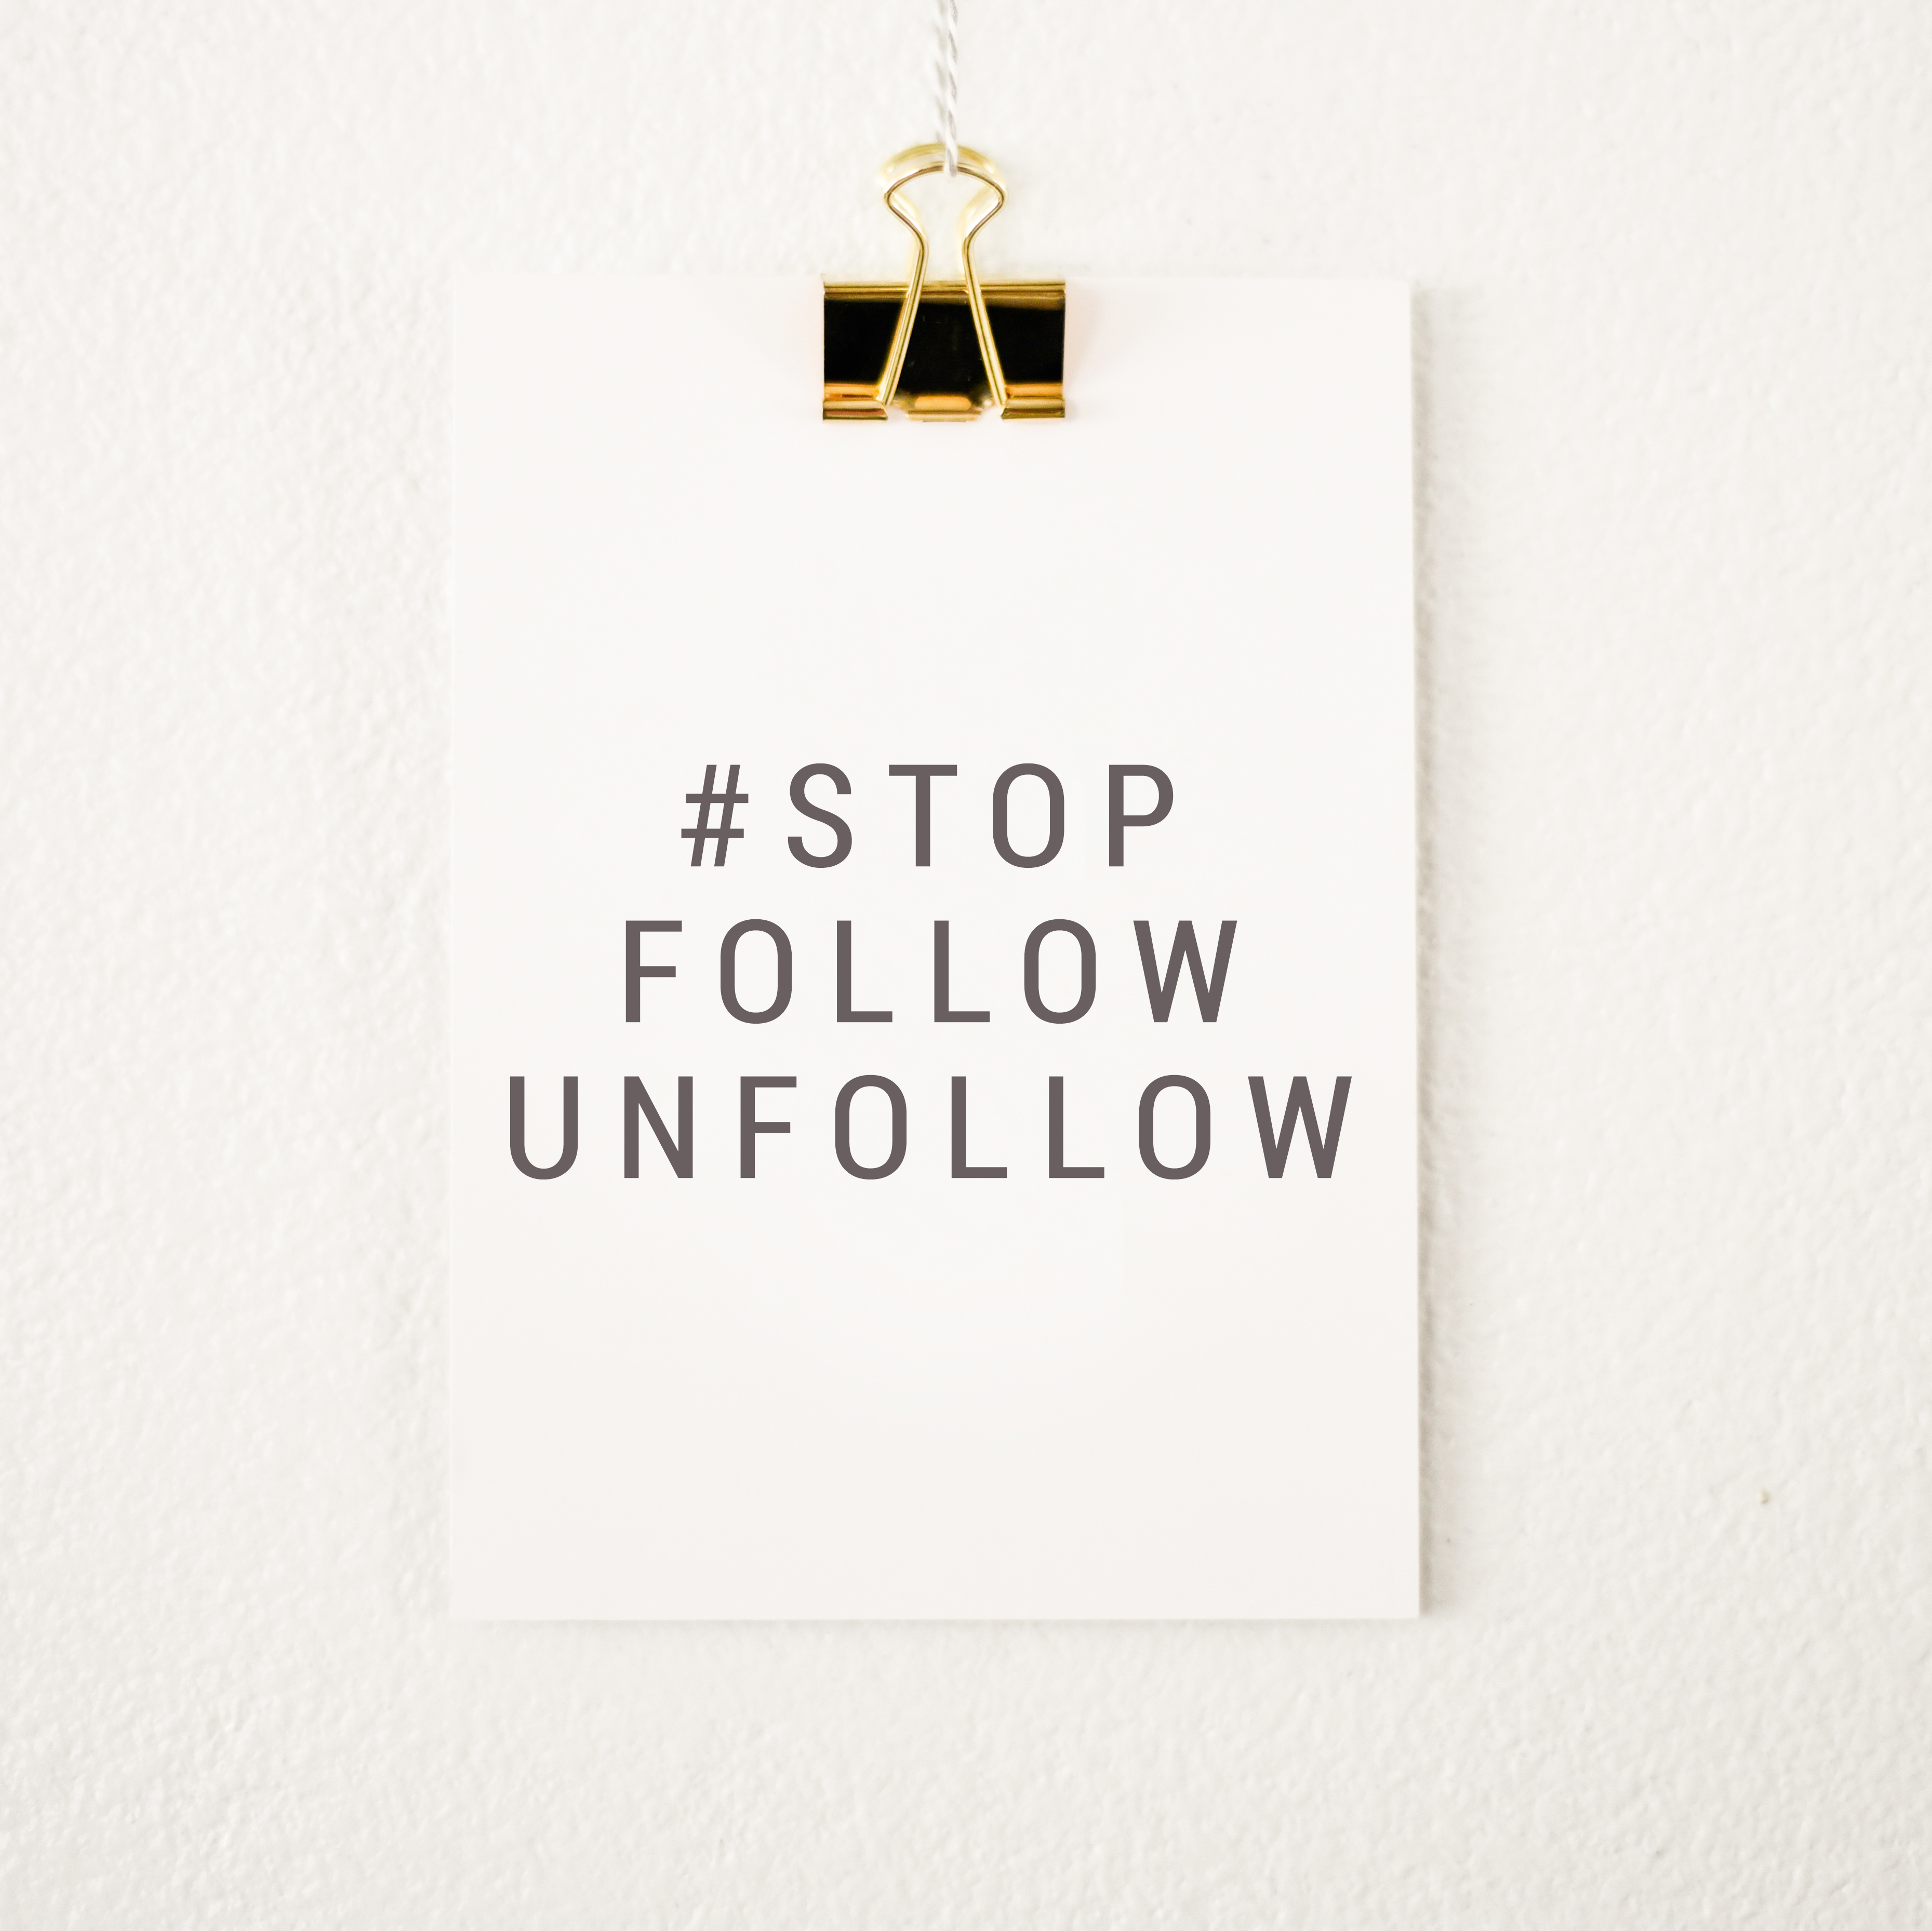 5 key reasons to stop follow unfollow - follow unfollow for instagram